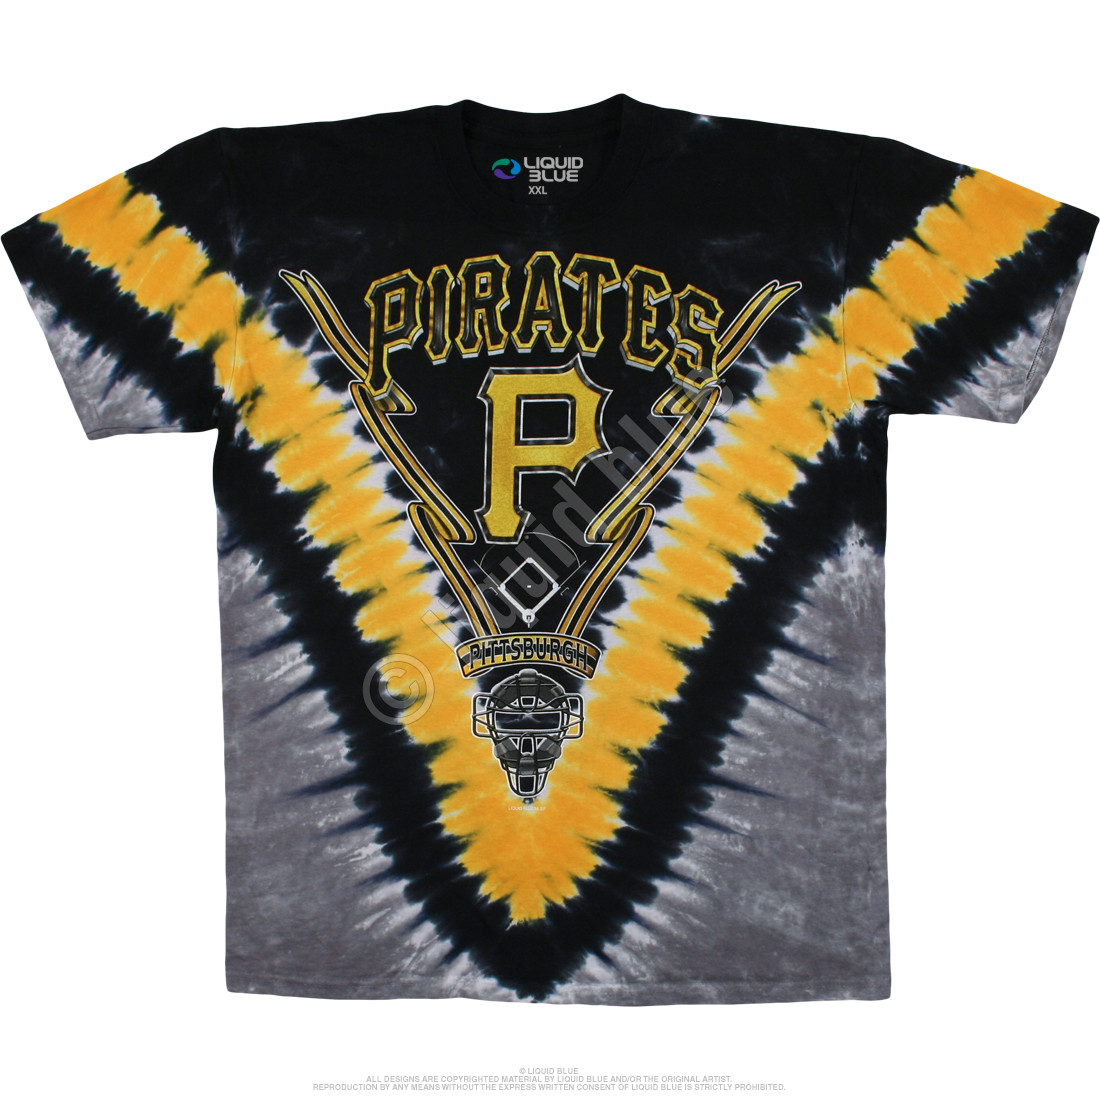 pittsburgh pirates custom t shirt